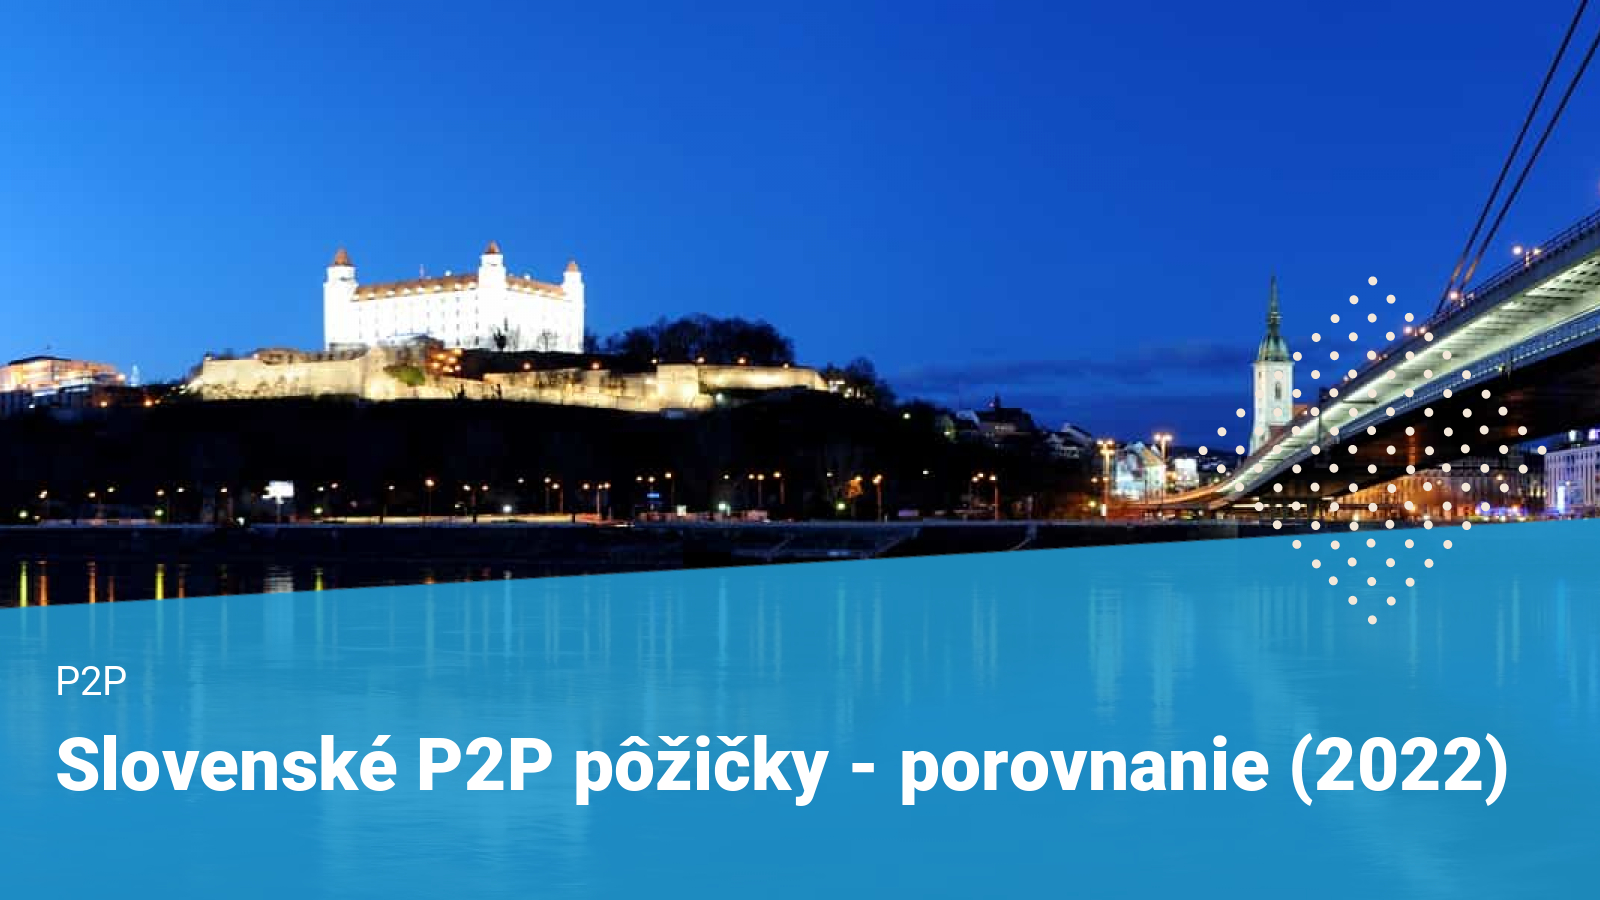 P2P-pozicky-slovensko